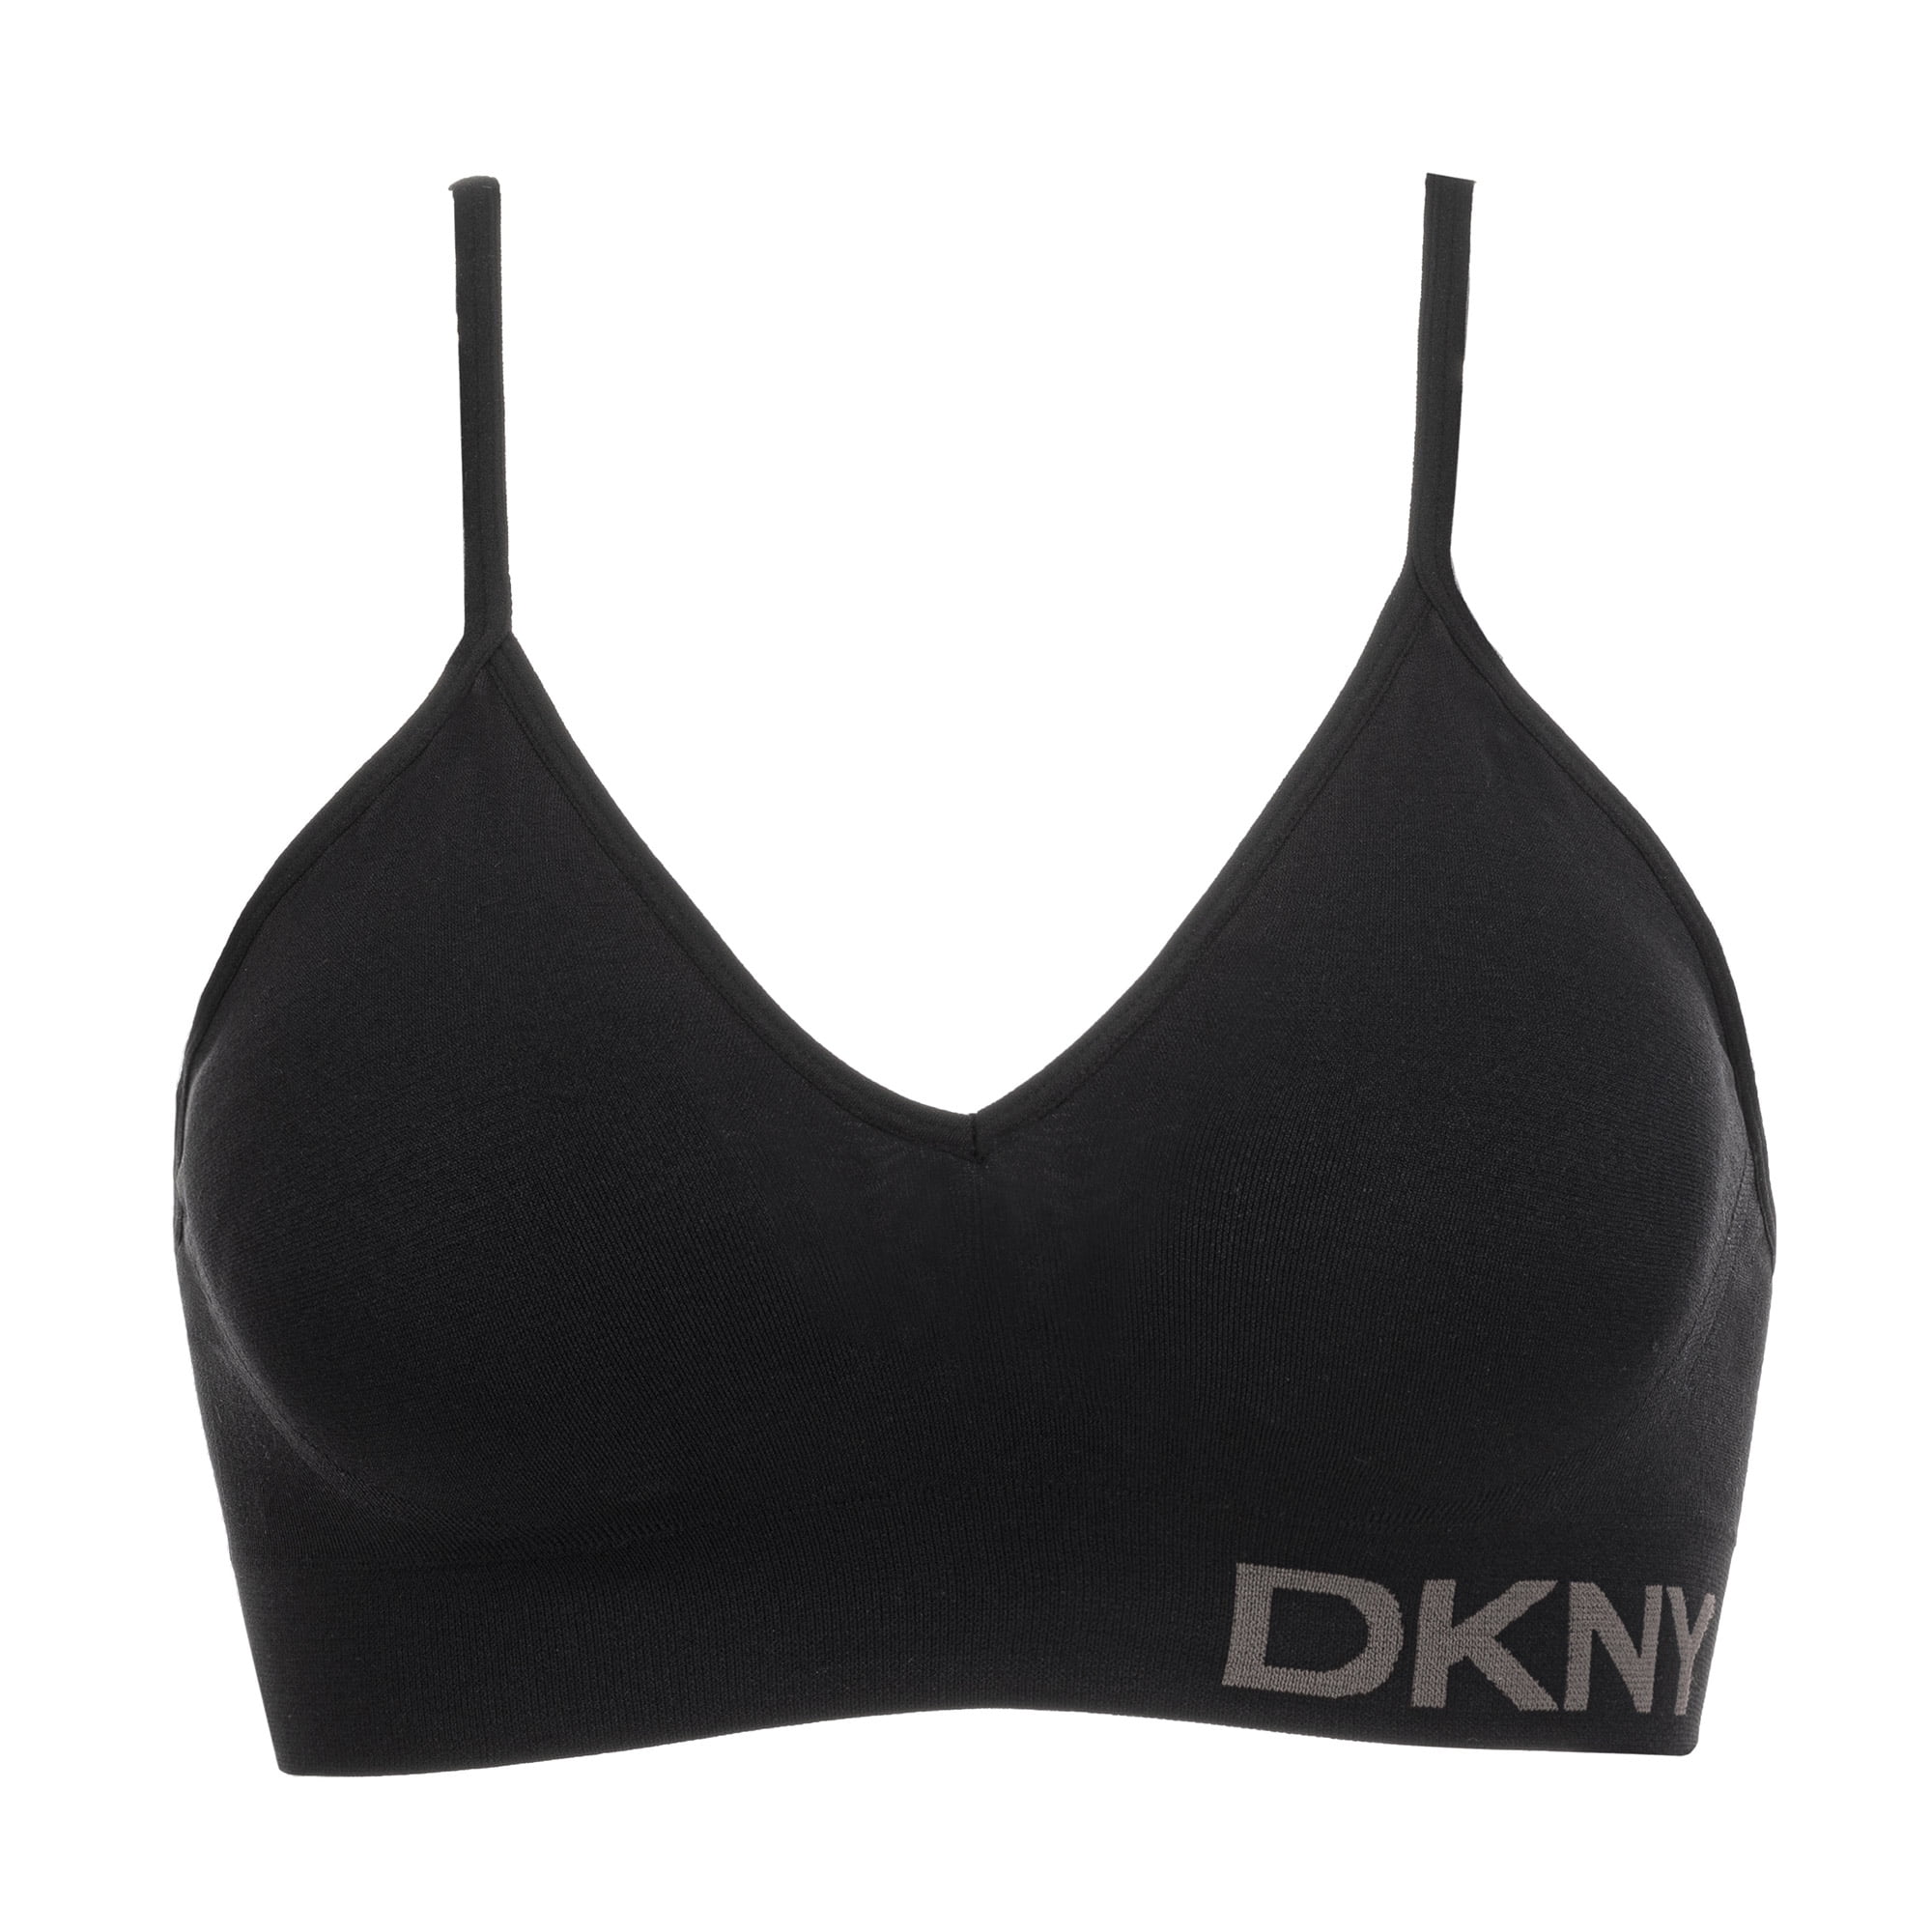 DKNY Sz S Ladies' Seamless Soft Stretch Wireless Bralette Black Bra